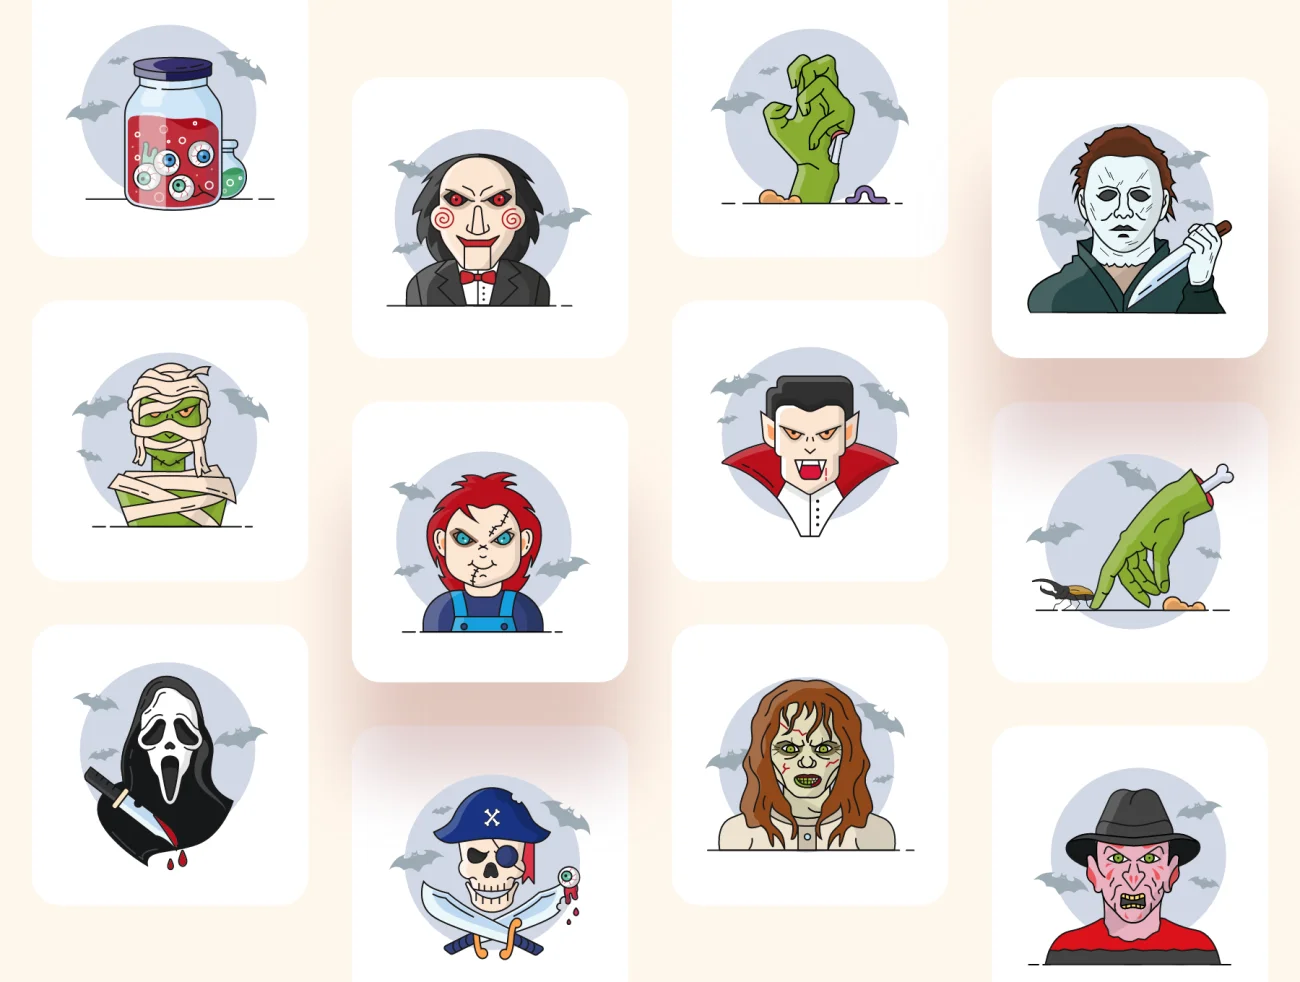 20款多彩万圣节恐怖插图图标素材合集 Halloween & Horror Character Icon Set-人物插画、场景插画、插画、概念创意、线条手绘、趣味漫画-到位啦UI